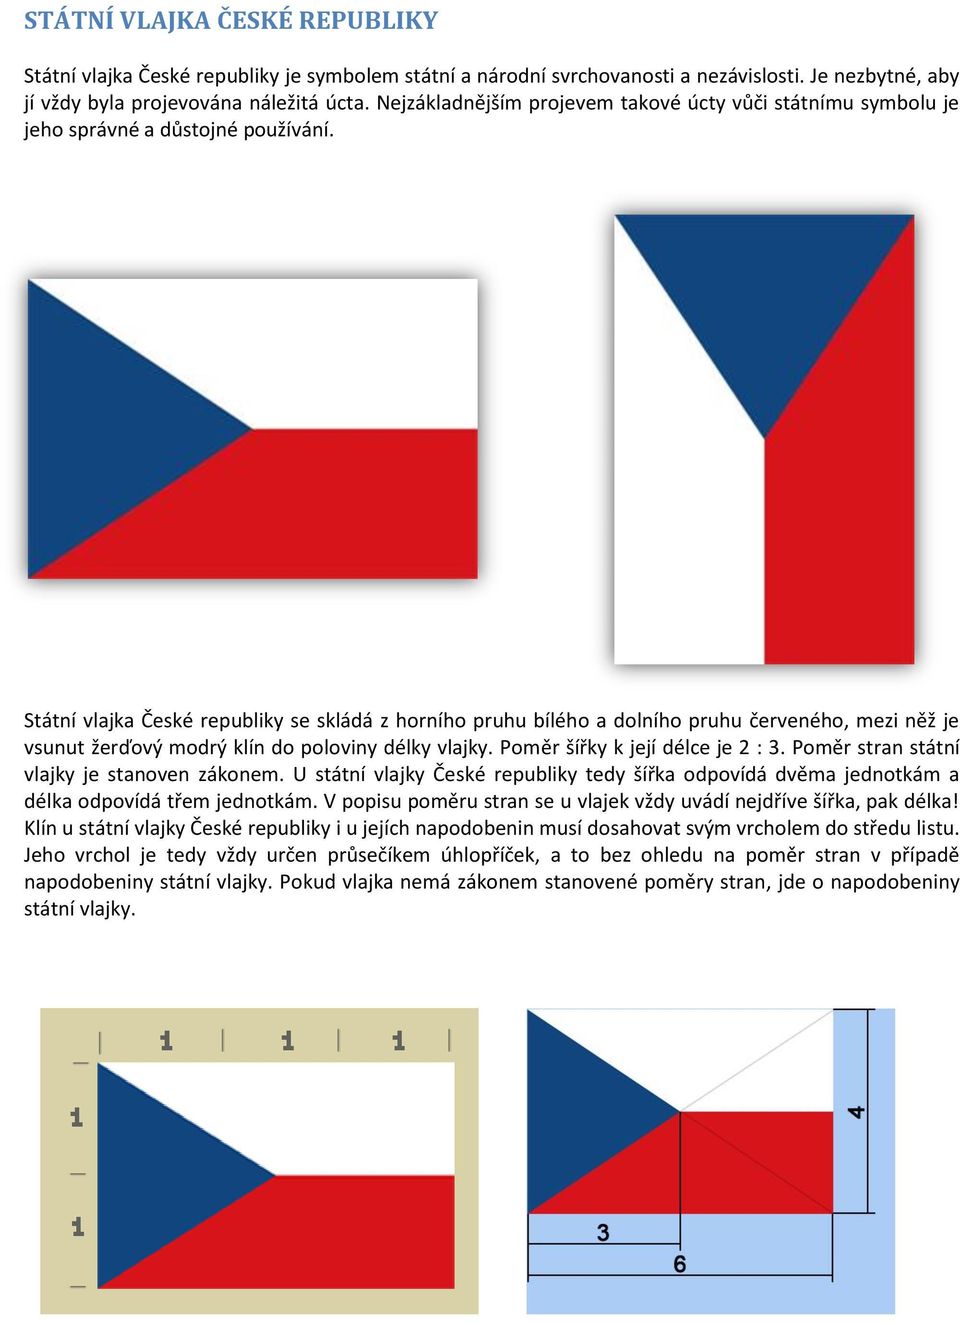 Státní vlajka České republiky se skládá z horního pruhu bílého a dolního pruhu červeného, mezi něž je vsunut žerďový modrý klín do poloviny délky vlajky. Poměr šířky k její délce je 2 : 3.